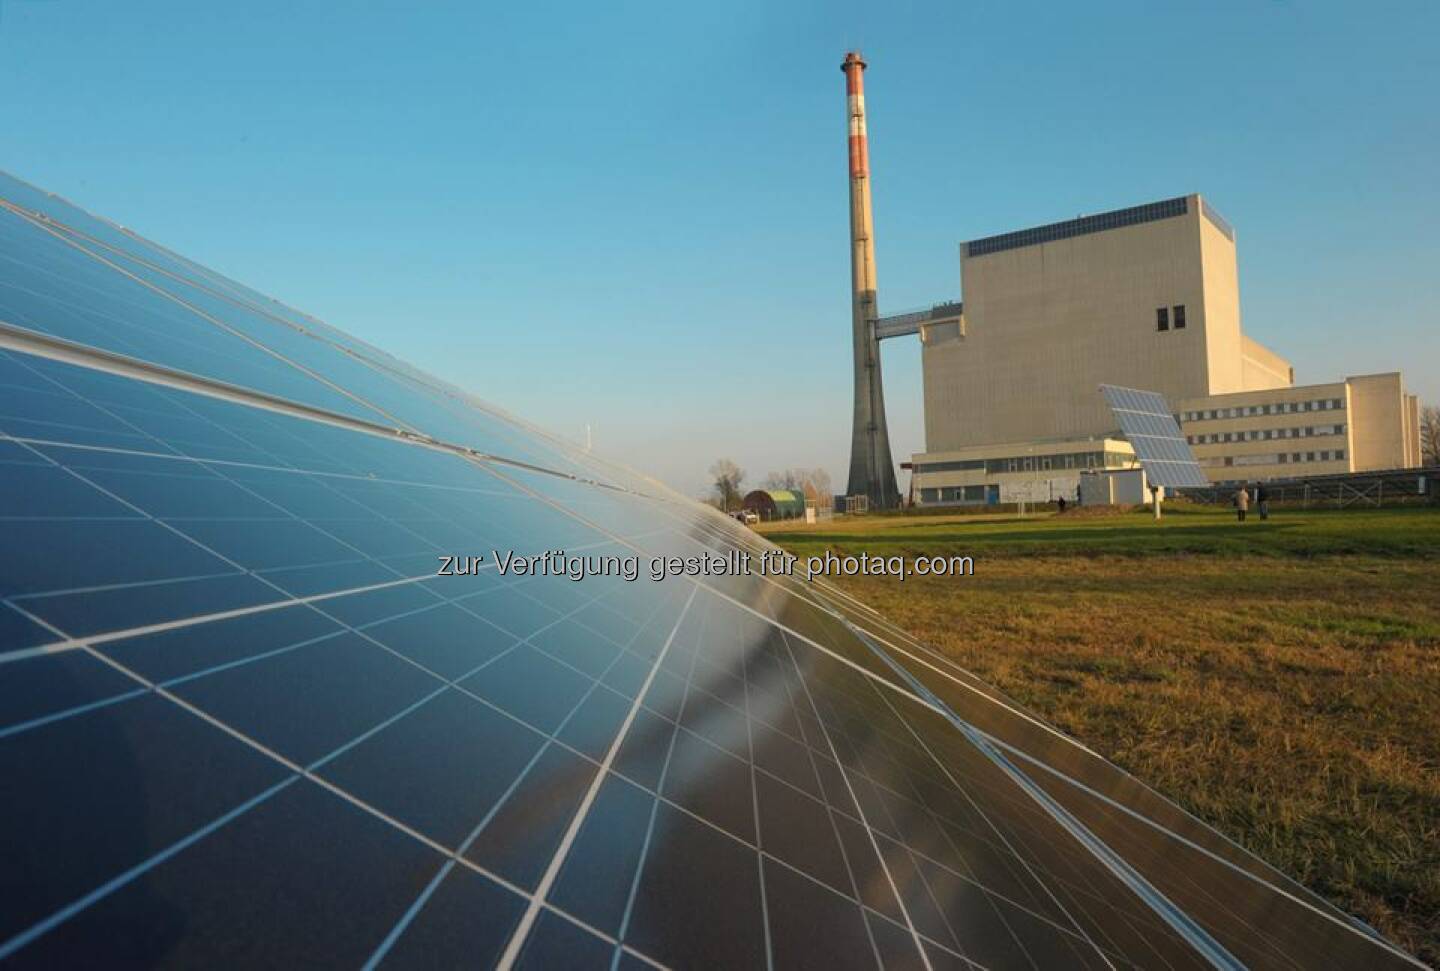 Sonne statt AKW.

Seit 2010 ist das EVN Photovoltaik-Forschungszentrum Zwentendorf da in Betrieb, wo einst ein Atomkraftwerk entstehen sollte. Mehr lesen: http://bit.ly/EVN_Photovoltaik

Foto: Moser  Source: http://facebook.com/EVN